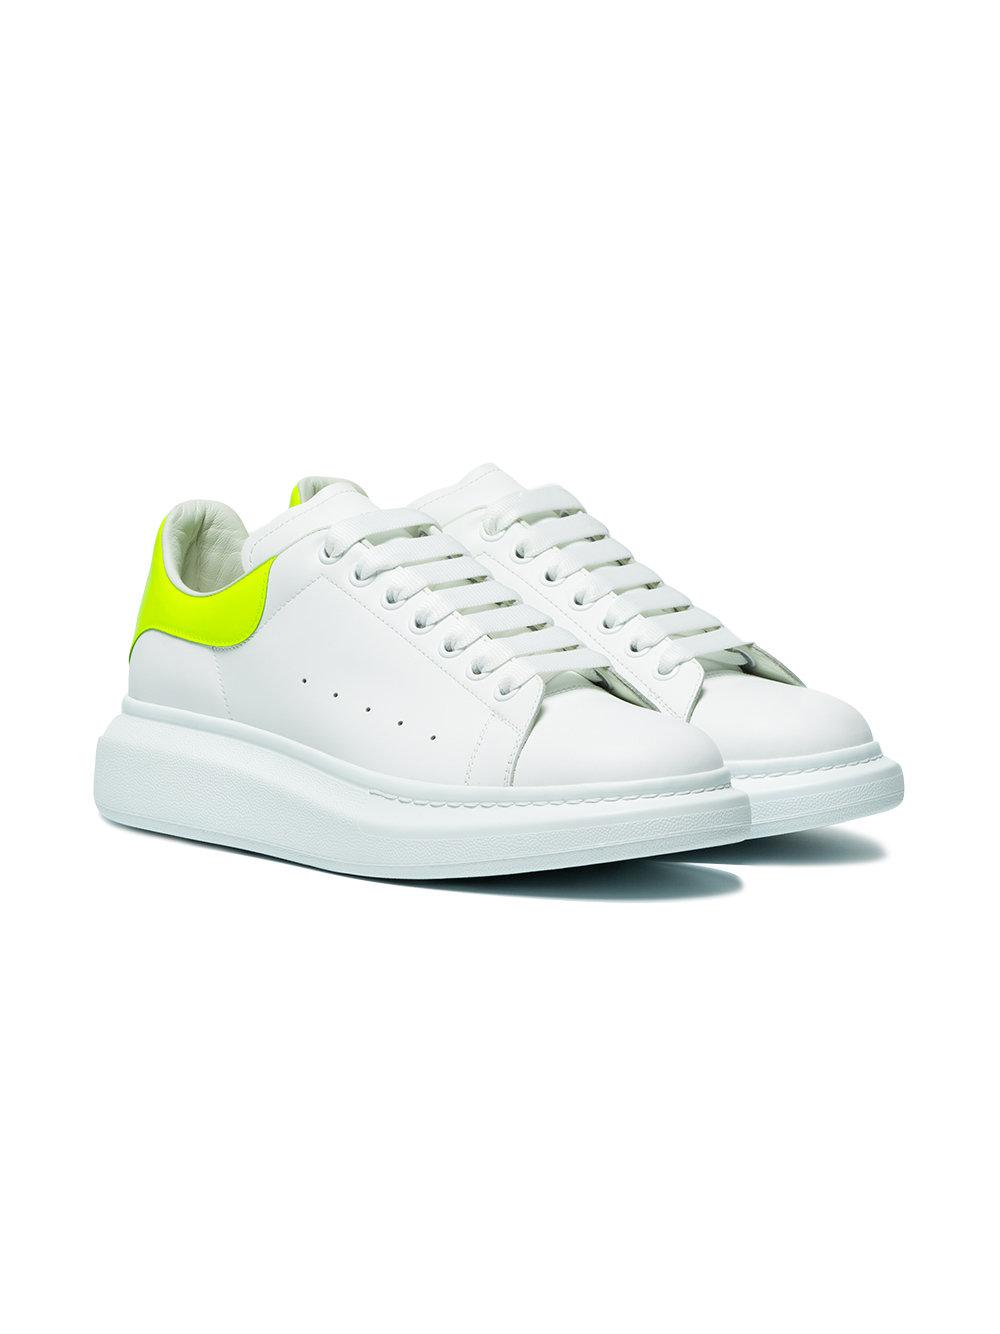 alexander mcqueen sneakers lime green